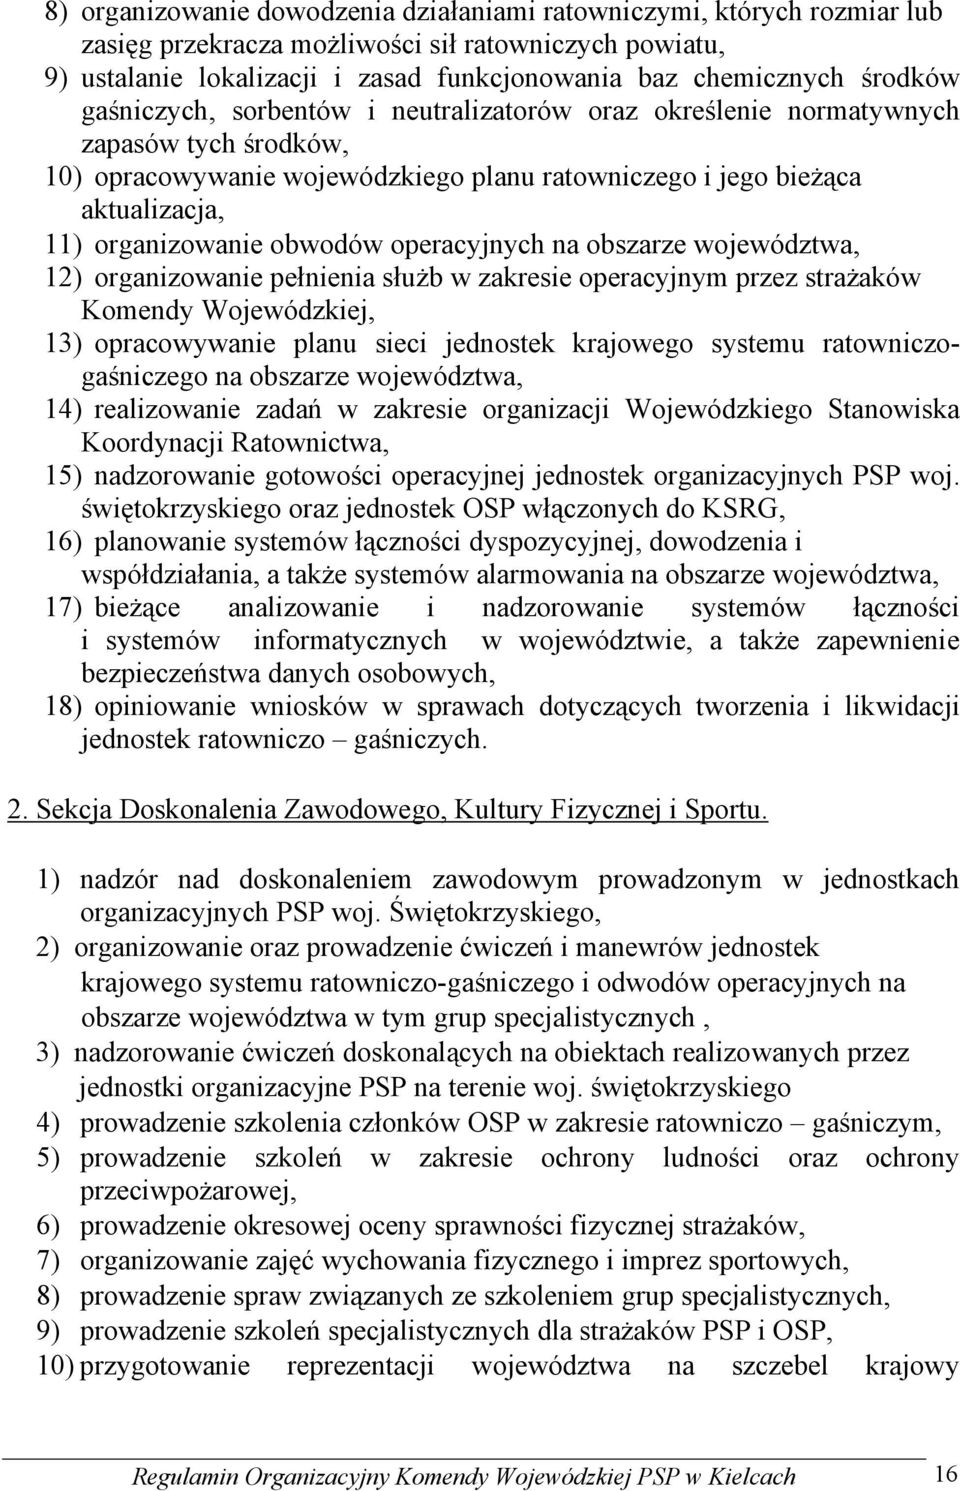 obwodów operacyjnych na obszarze województwa, 12) organizowanie pełnienia służb w zakresie operacyjnym przez strażaków Komendy Wojewódzkiej, 13) opracowywanie planu sieci jednostek krajowego systemu